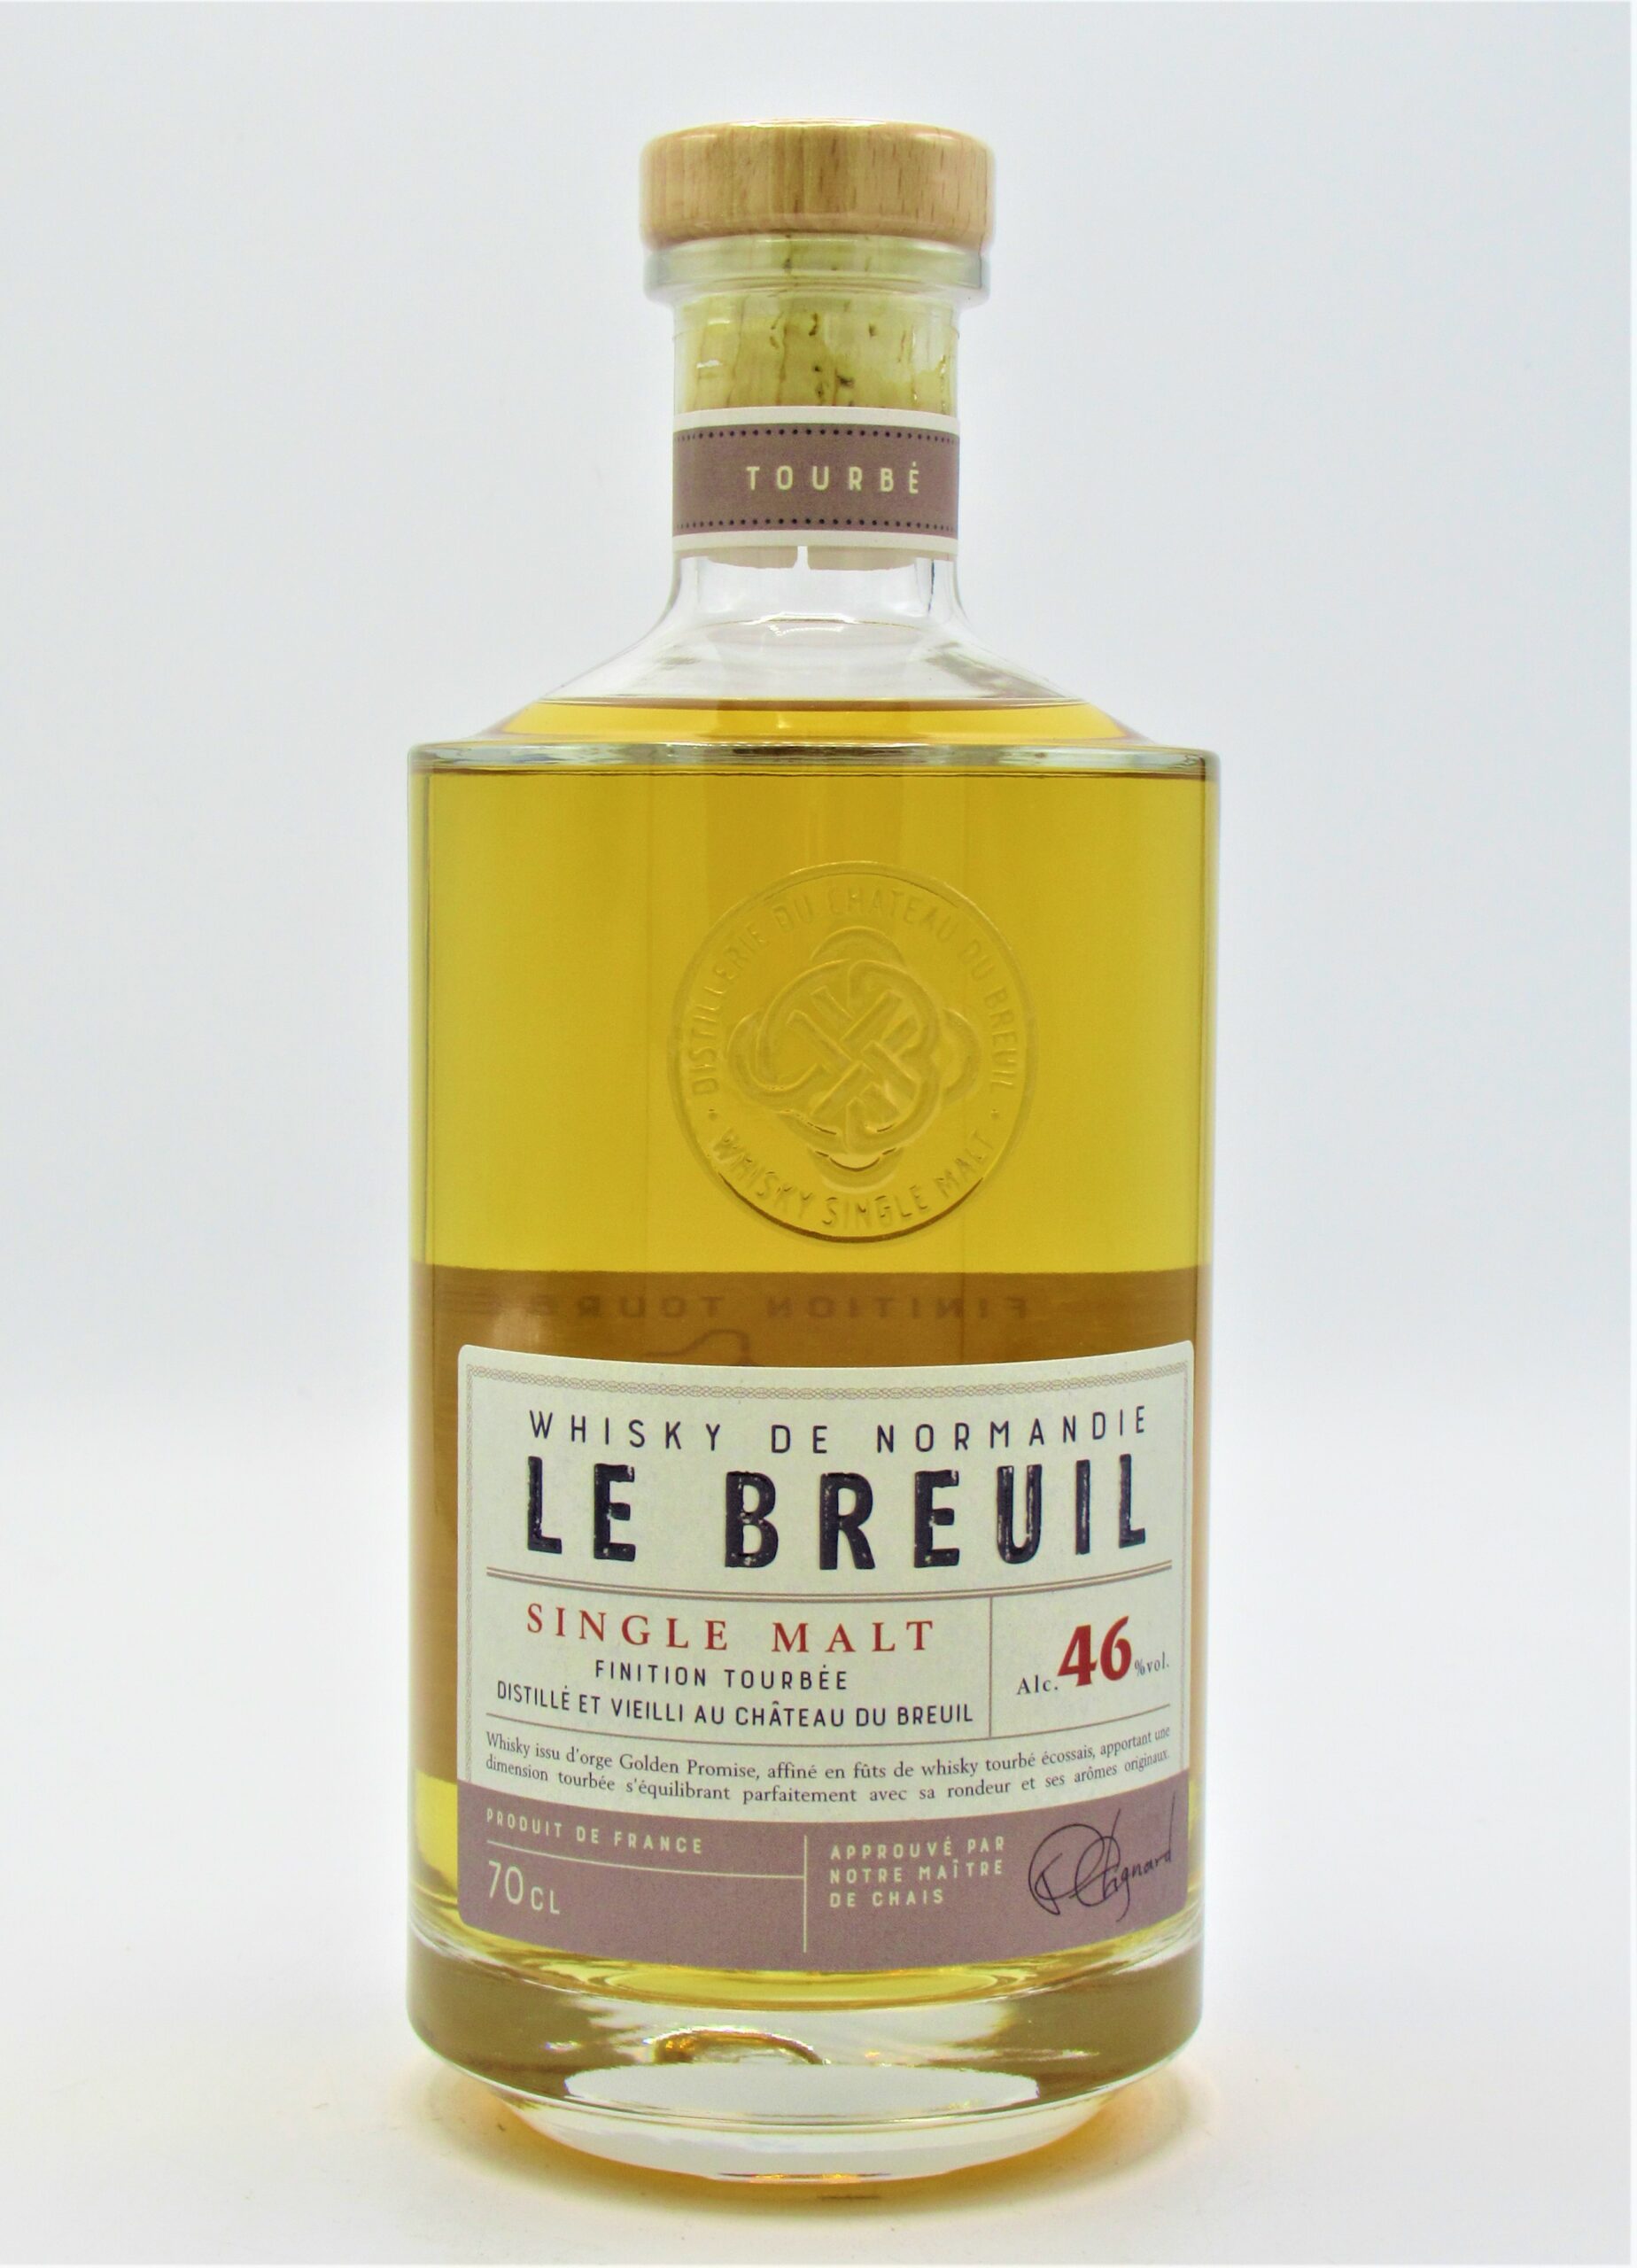 Single Malt Whisky Tourbé Normandie France Chateau du Breuil - La